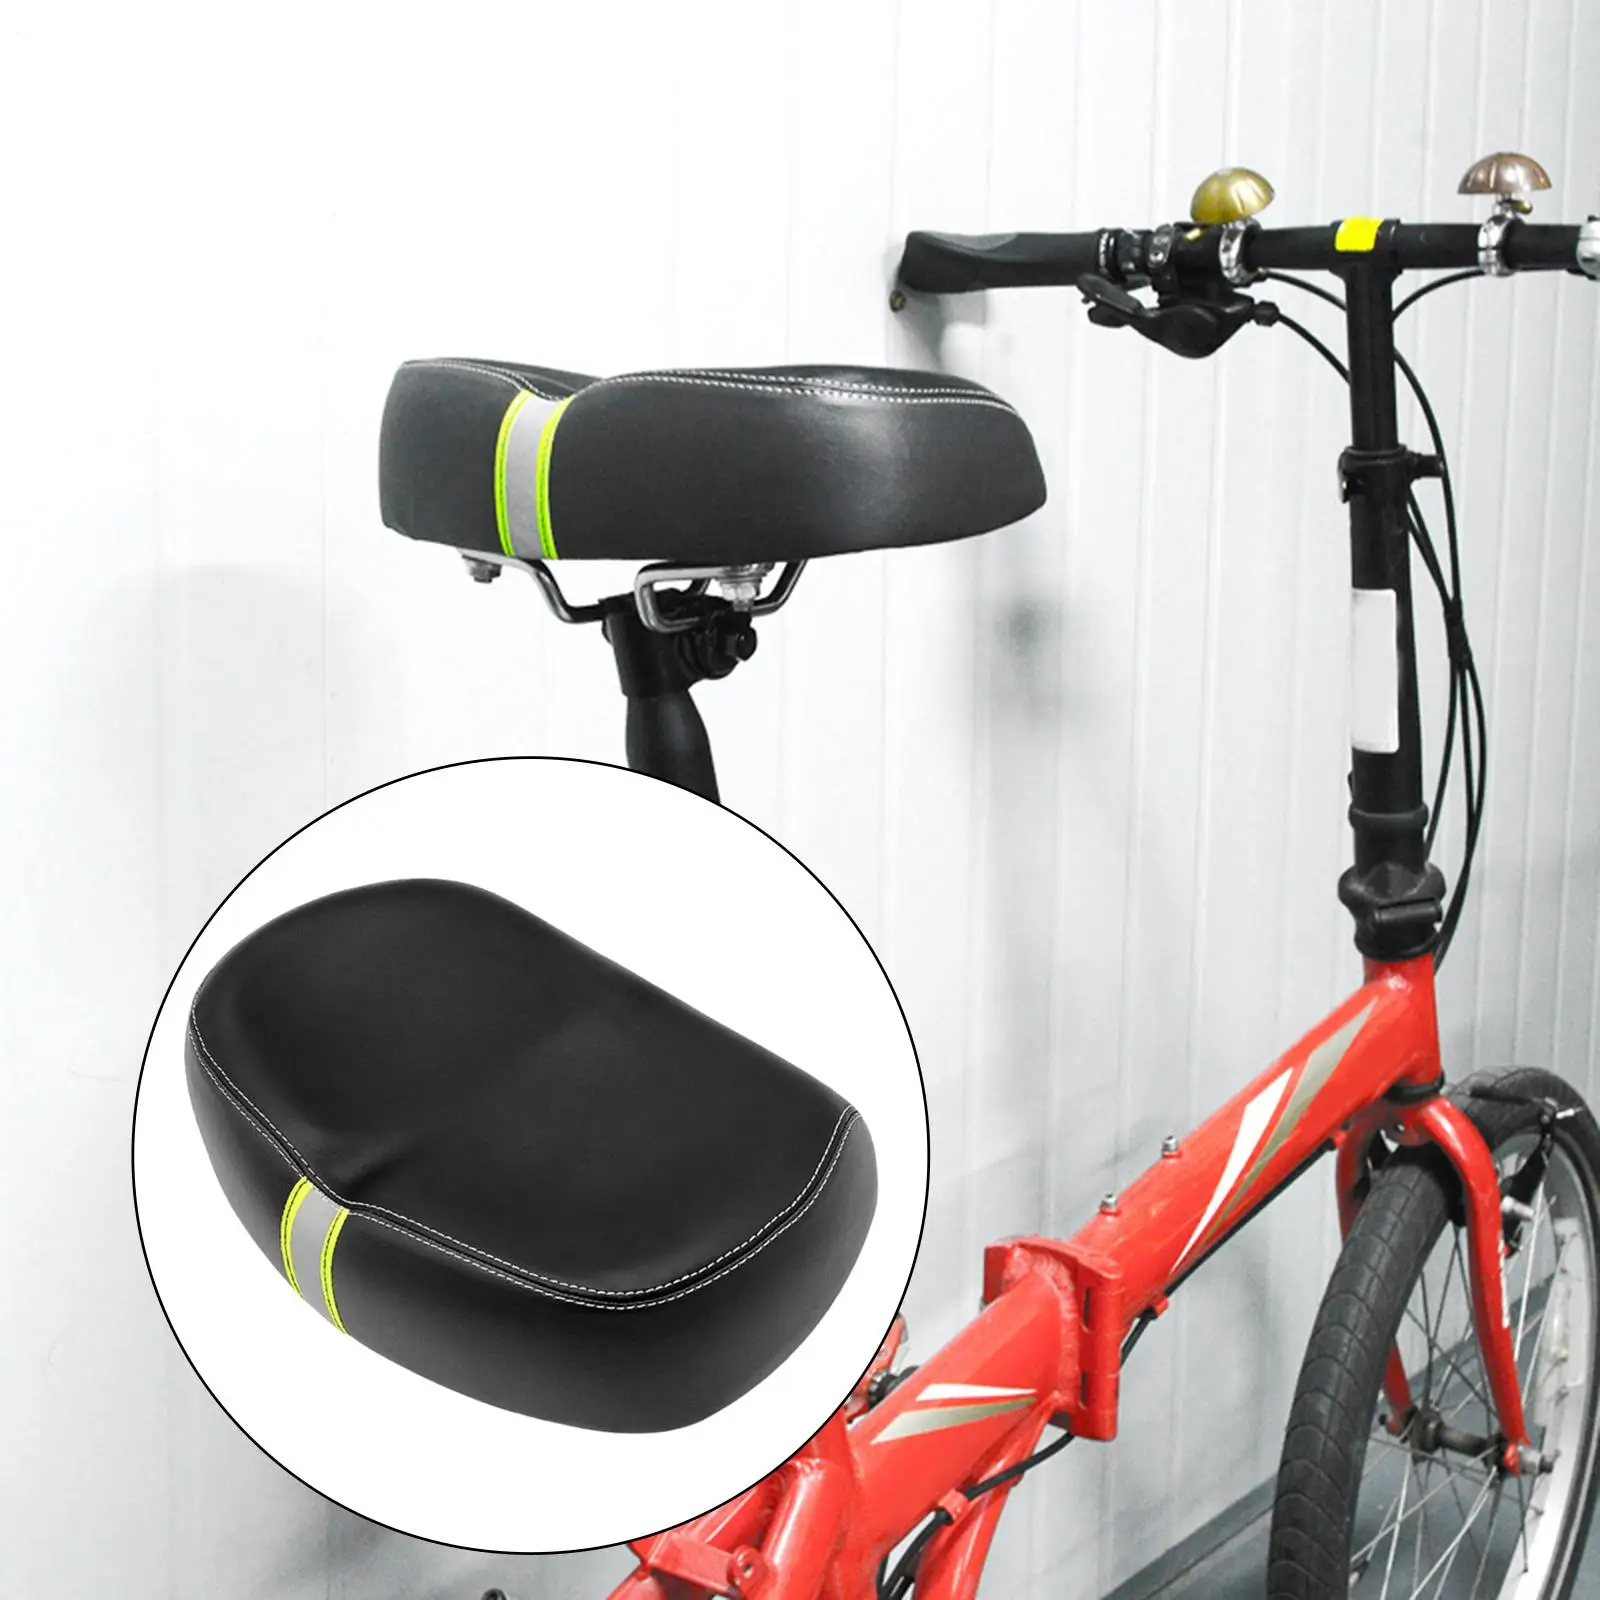 Oversized Bike Seat Saddle Comfortable Noseless Breathable